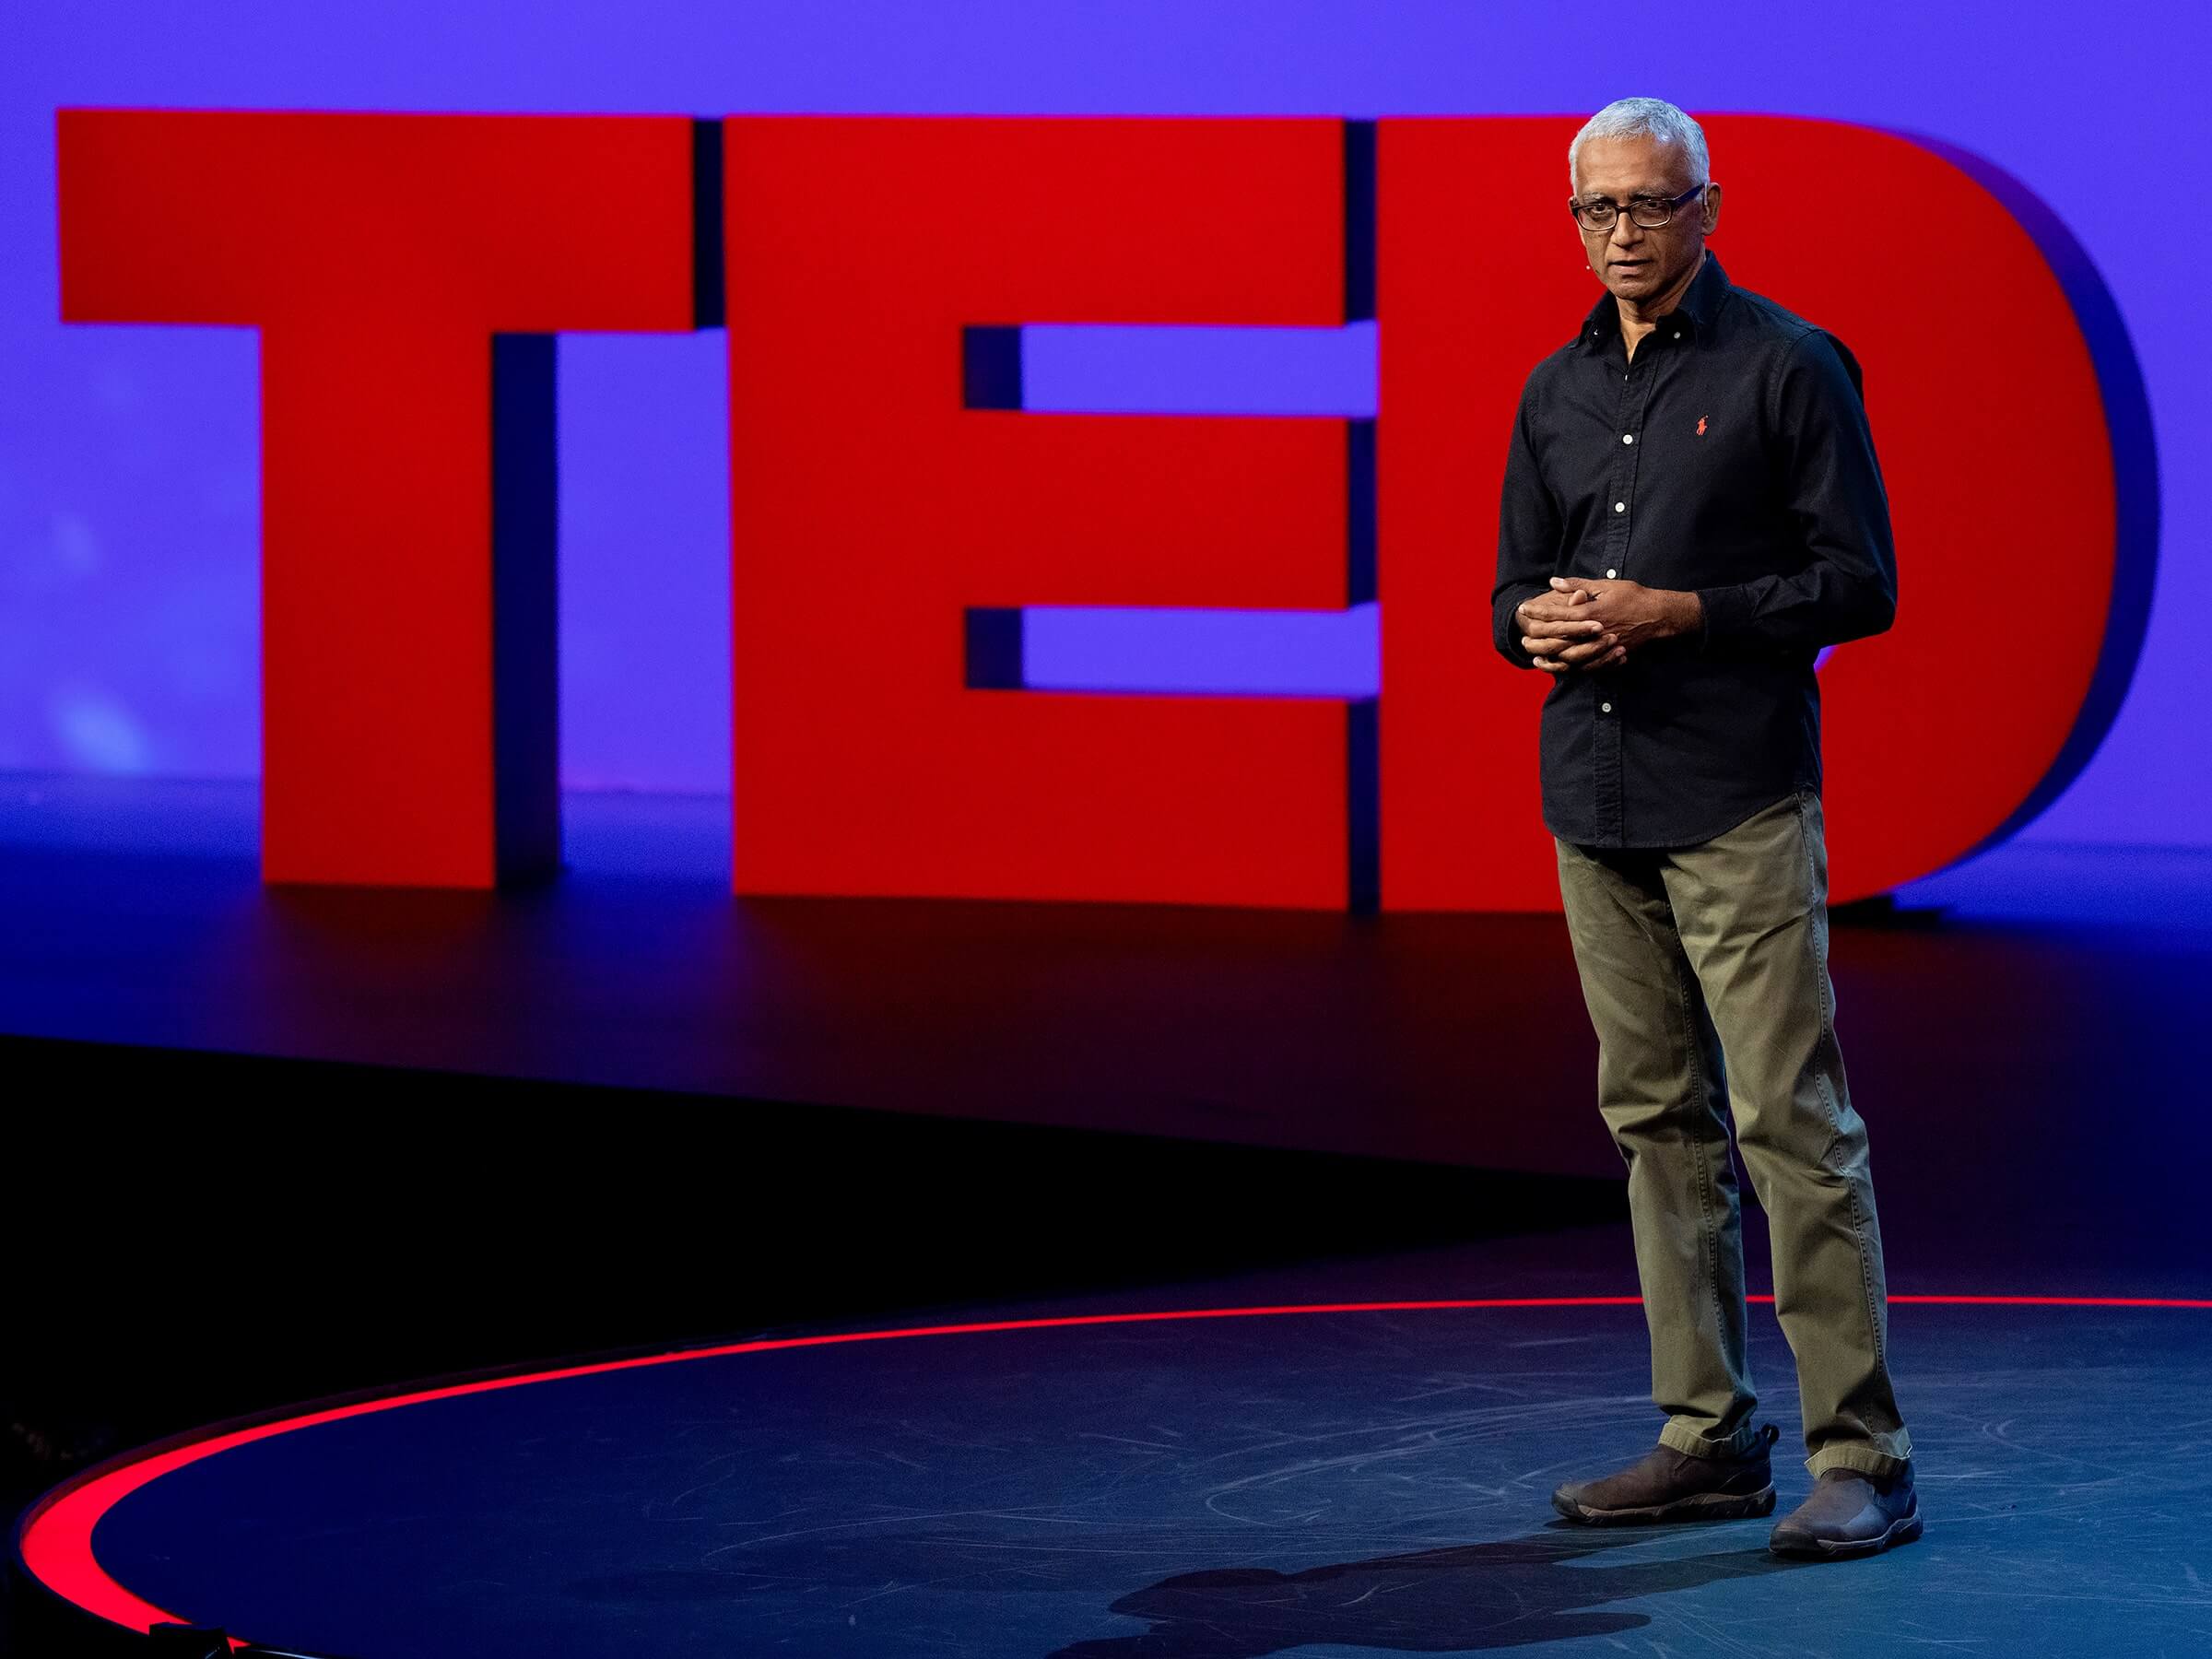 تد (TED) چیست؟